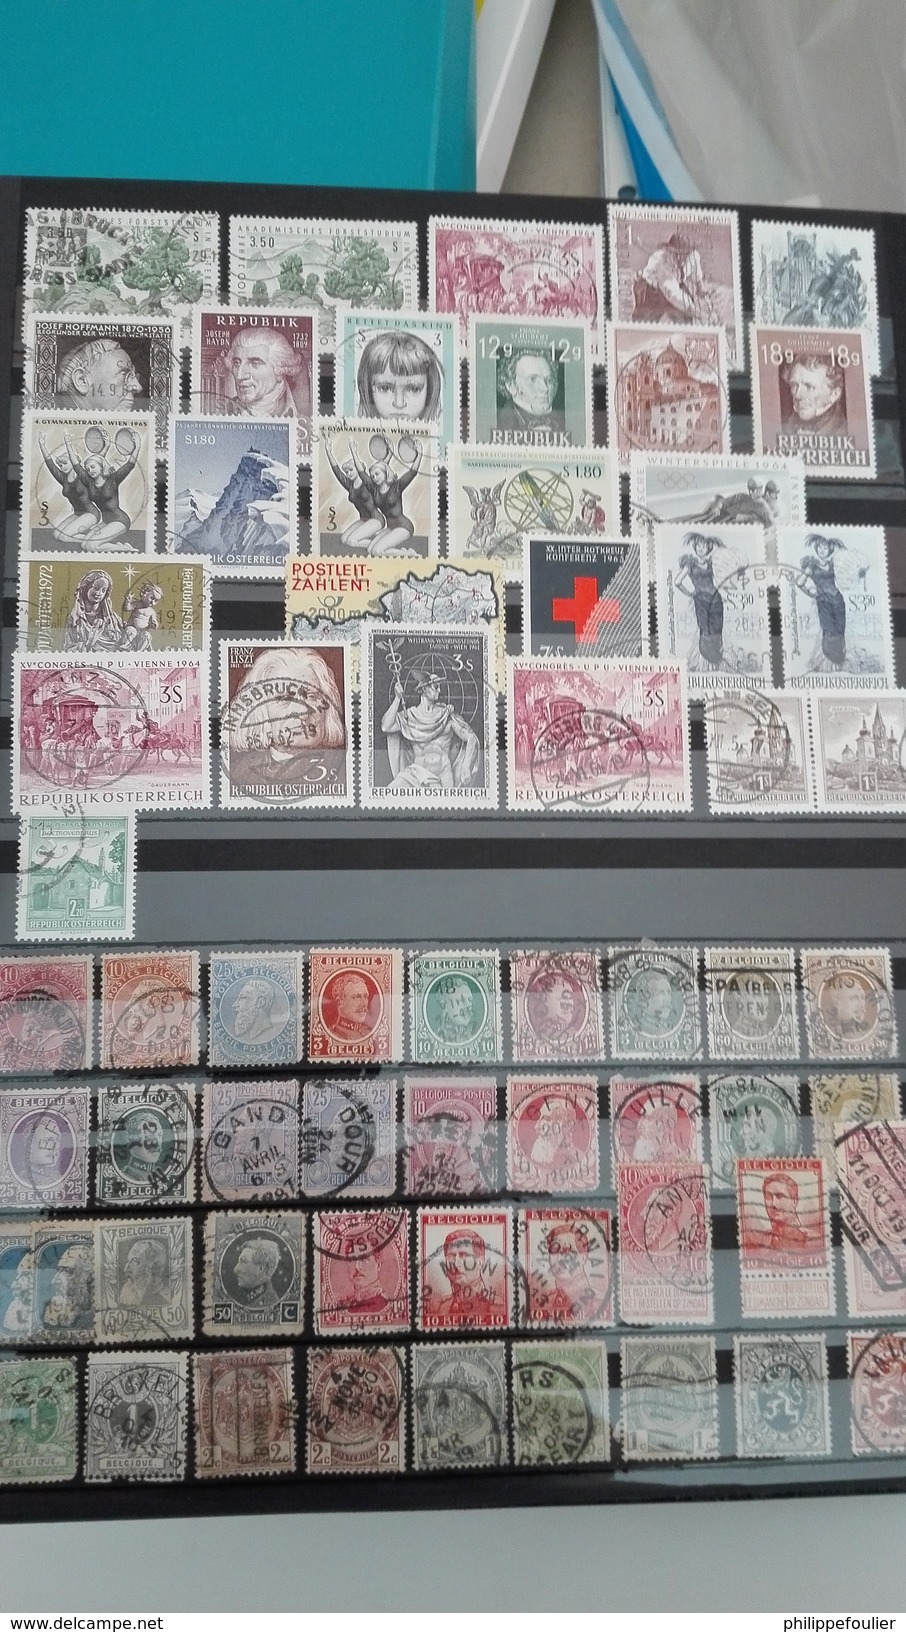 lots timbres européens + pays de l 'Est dans album